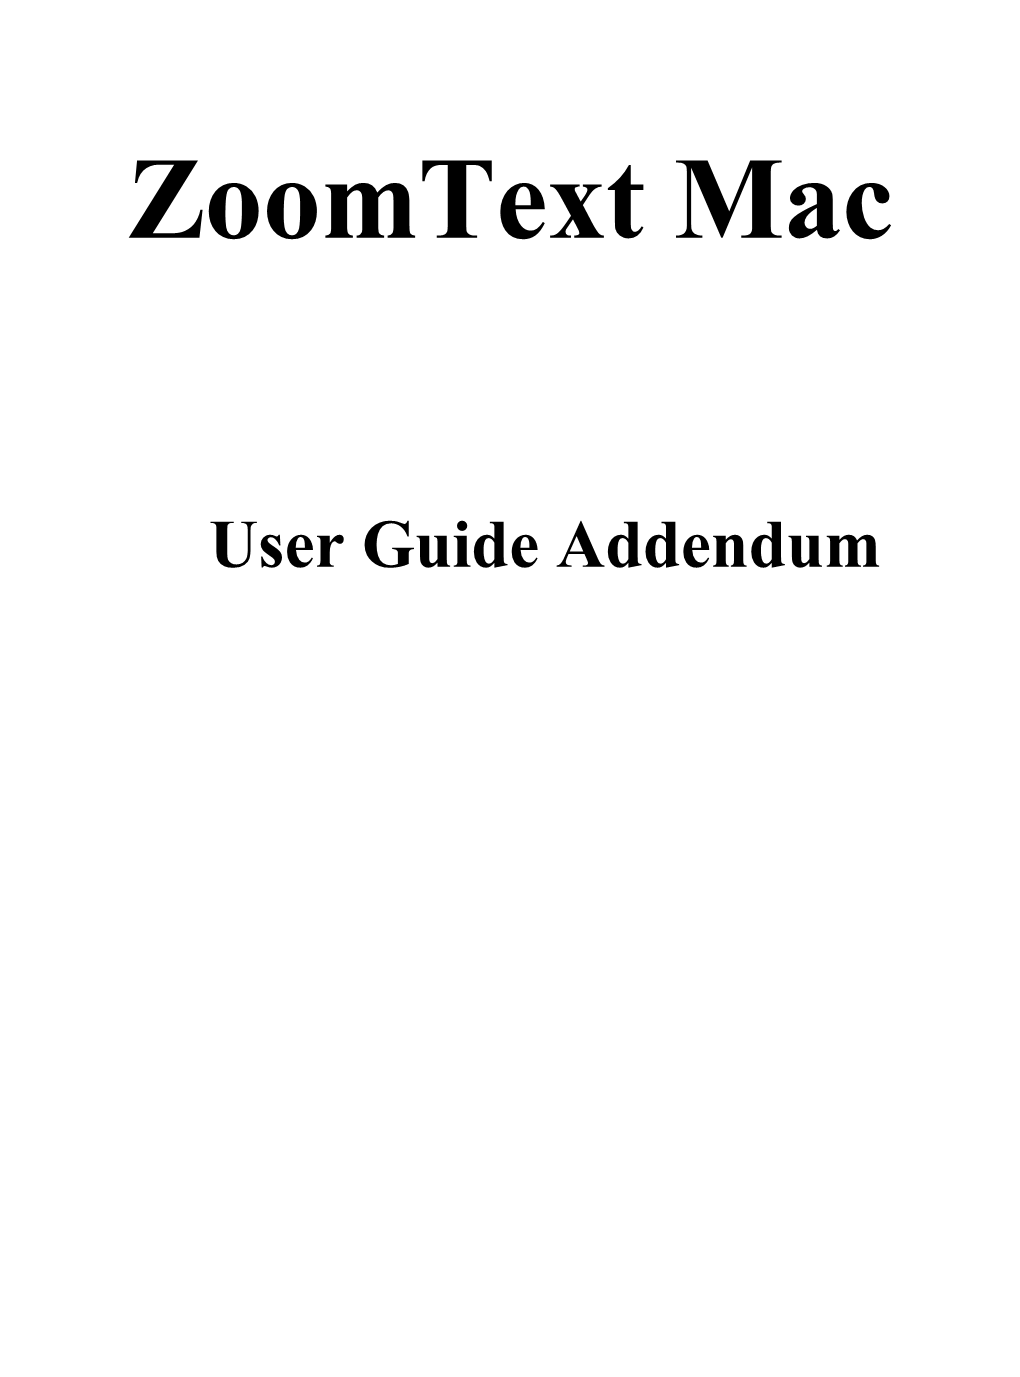 Zoomtext Mac User Guide Addendum